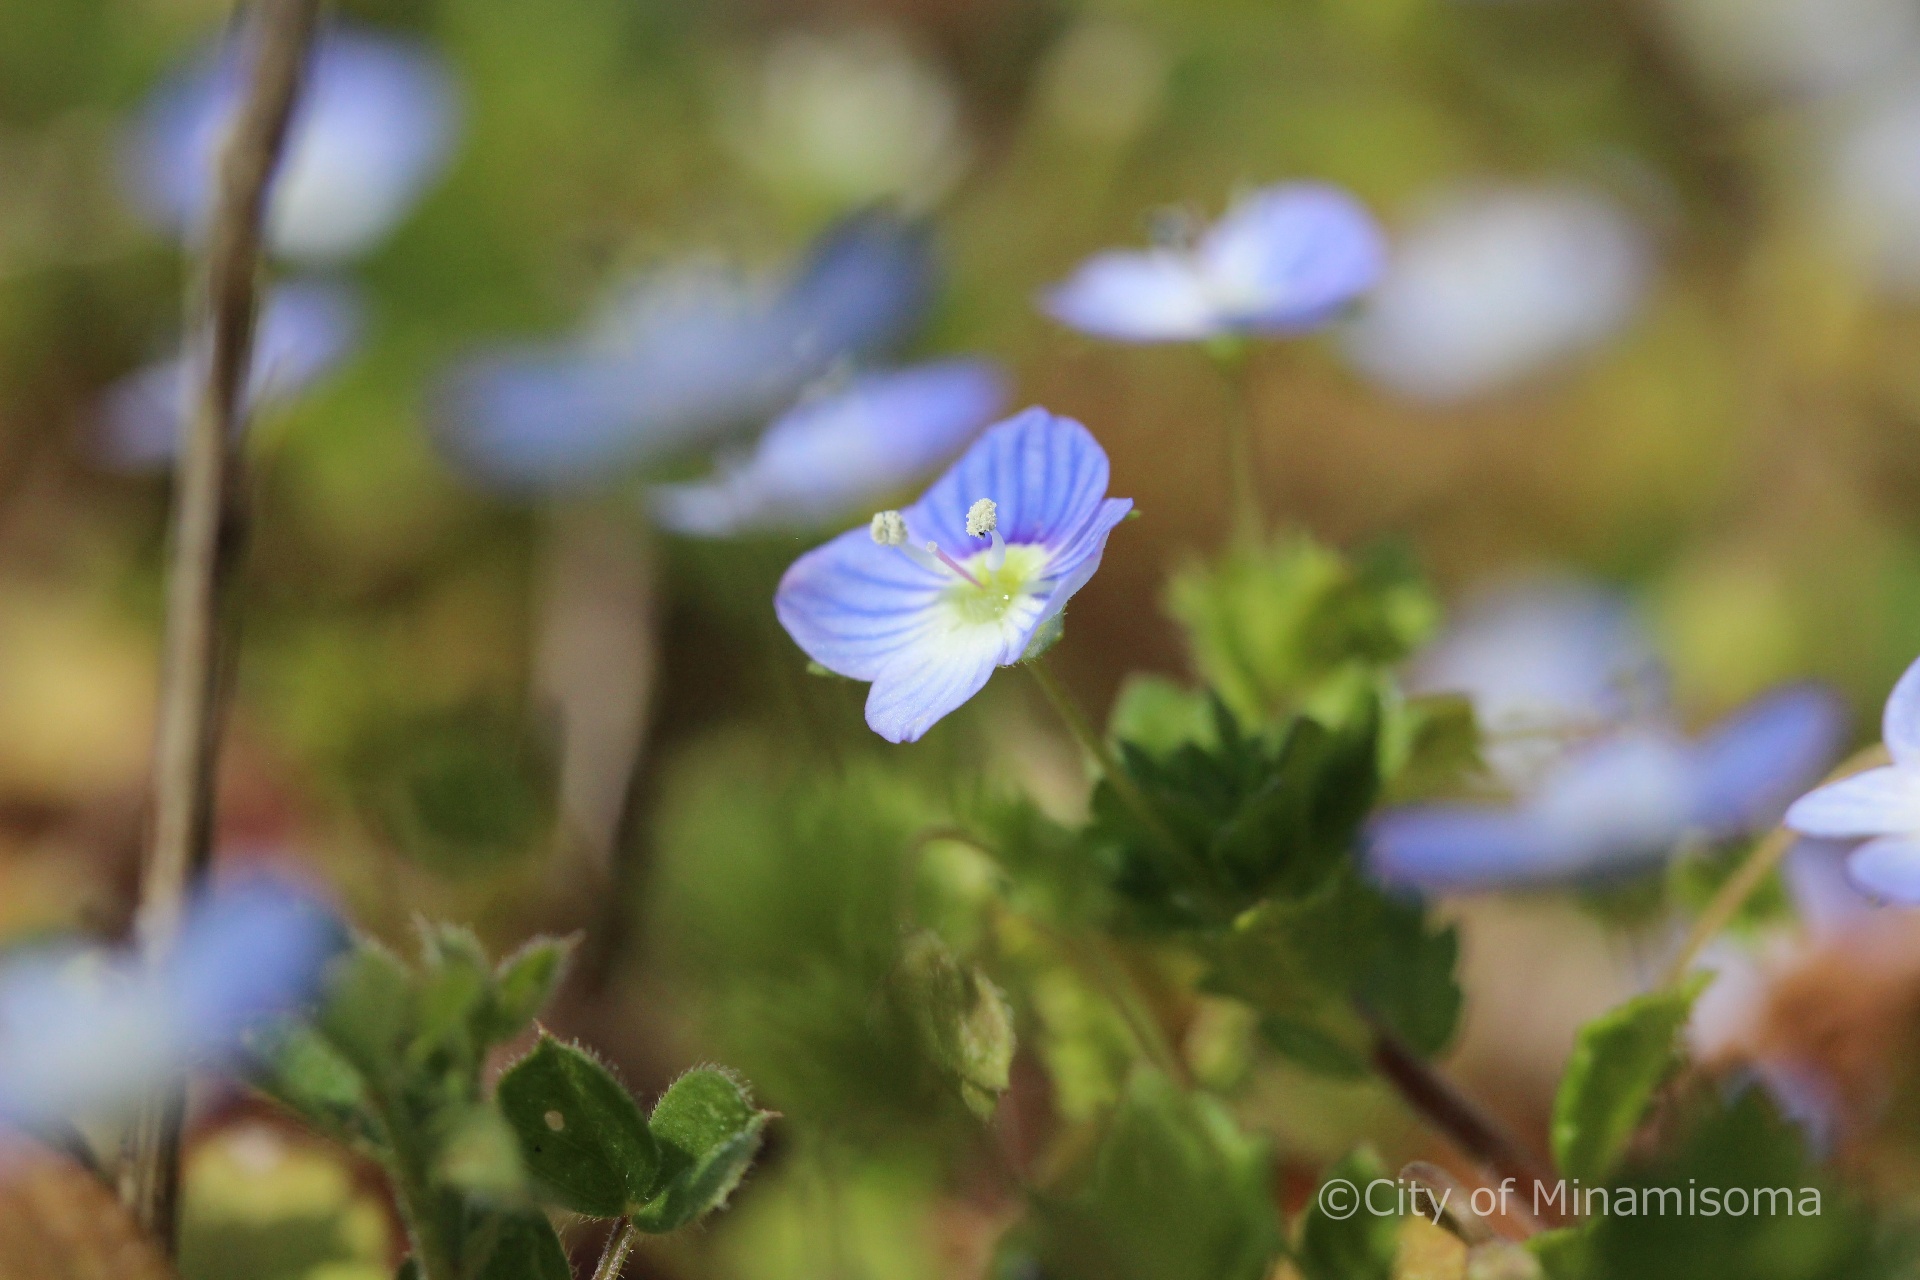 オオイヌノフグリの青い小さな花が咲いている様子。